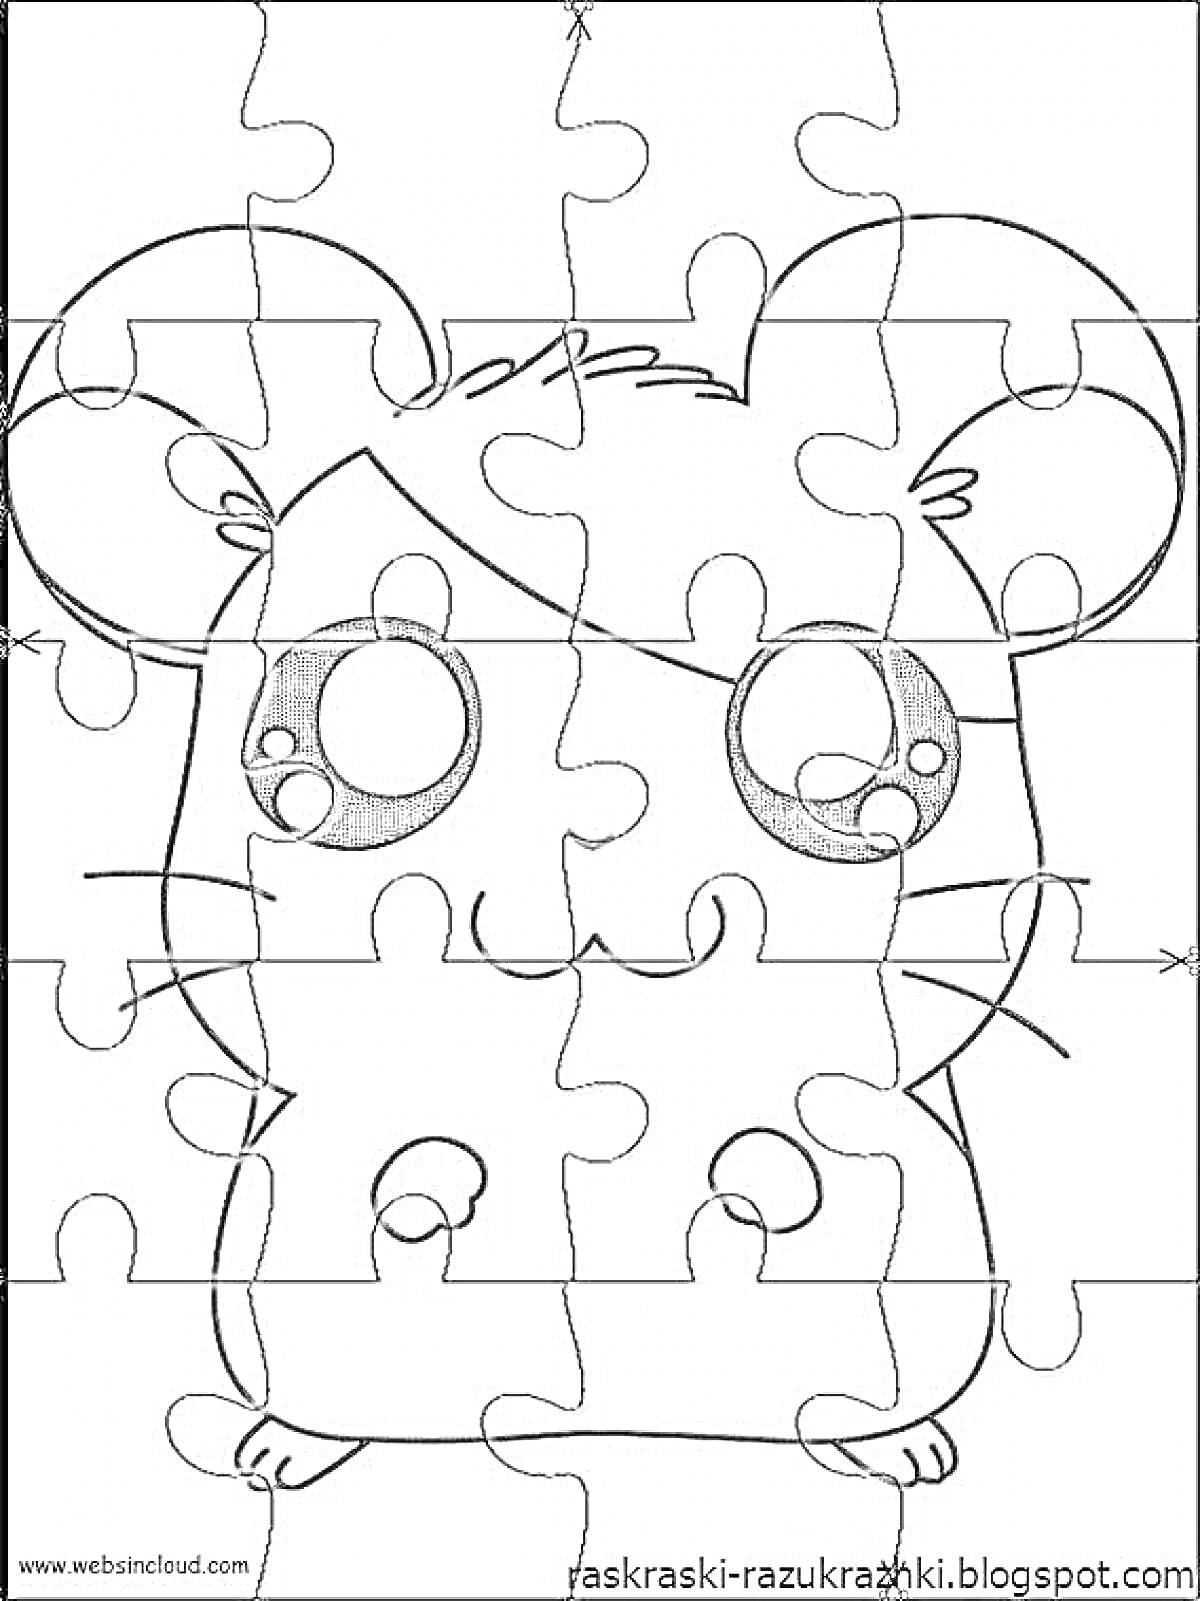 Раскраска Пазл-раскраска с изображением аниме-хомяка